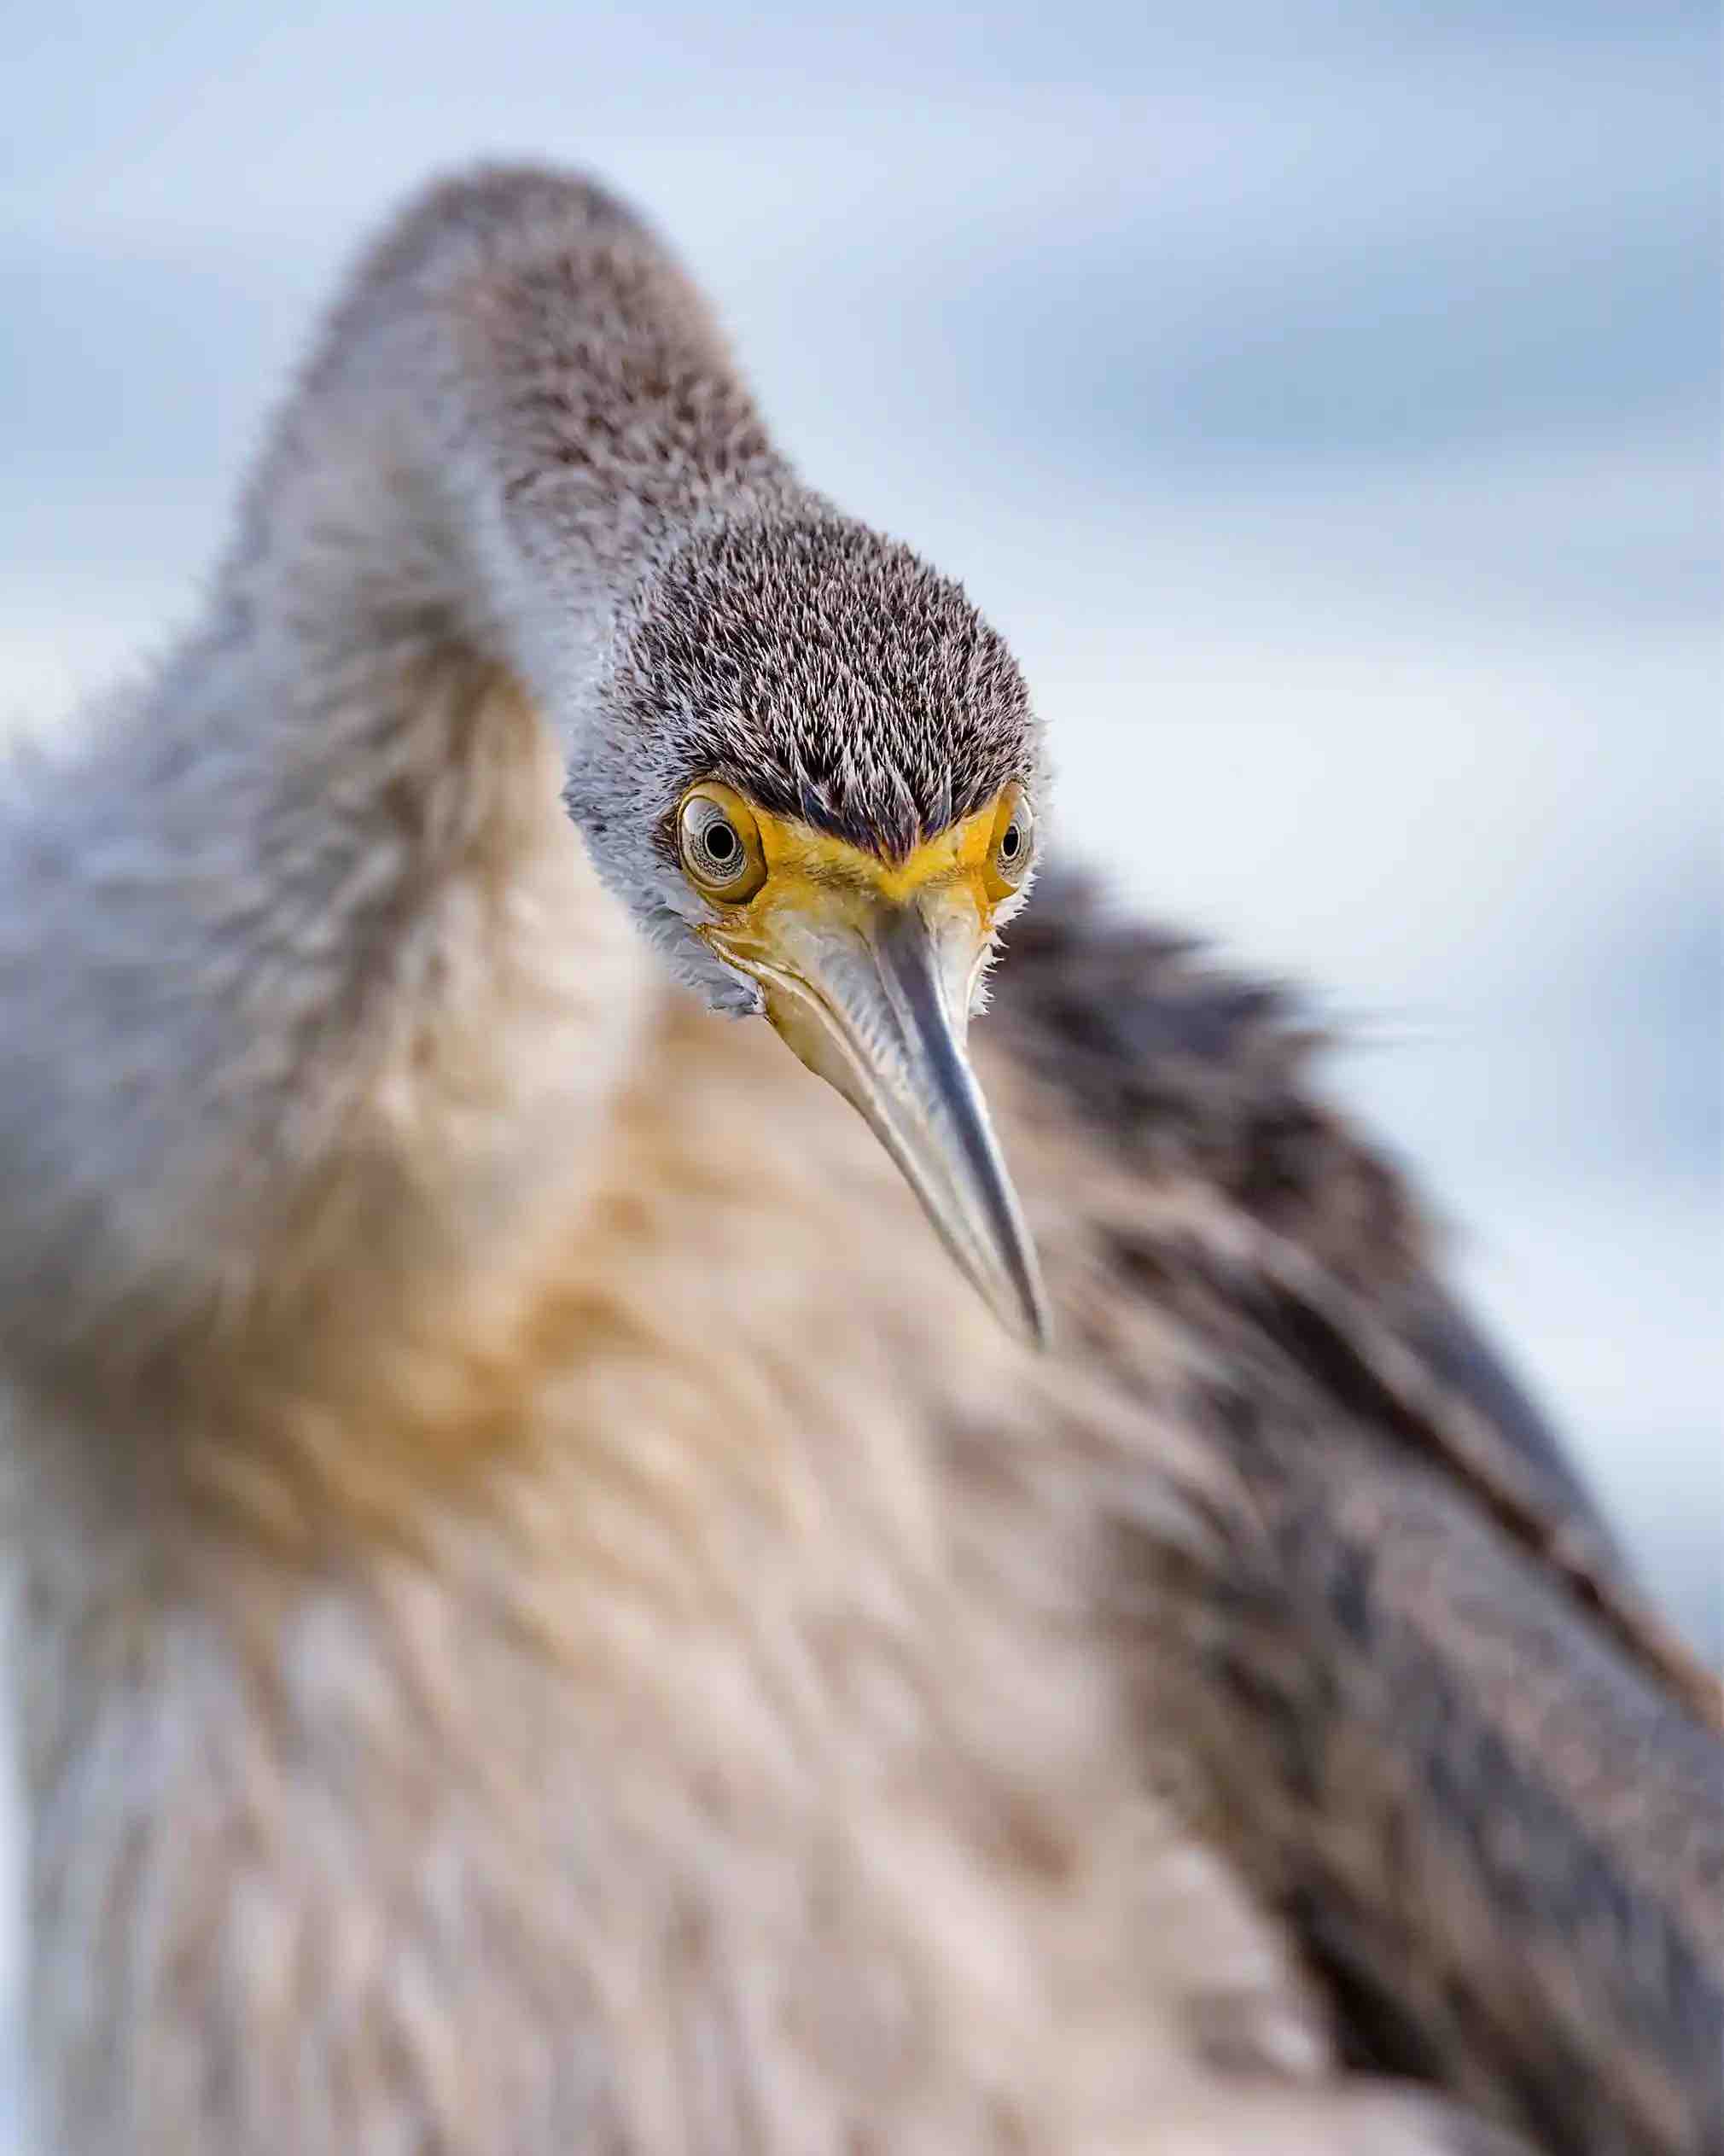 Ave darter da Austrália, foto vencedor da categoria Retratos do concurso Birdlife Photo 